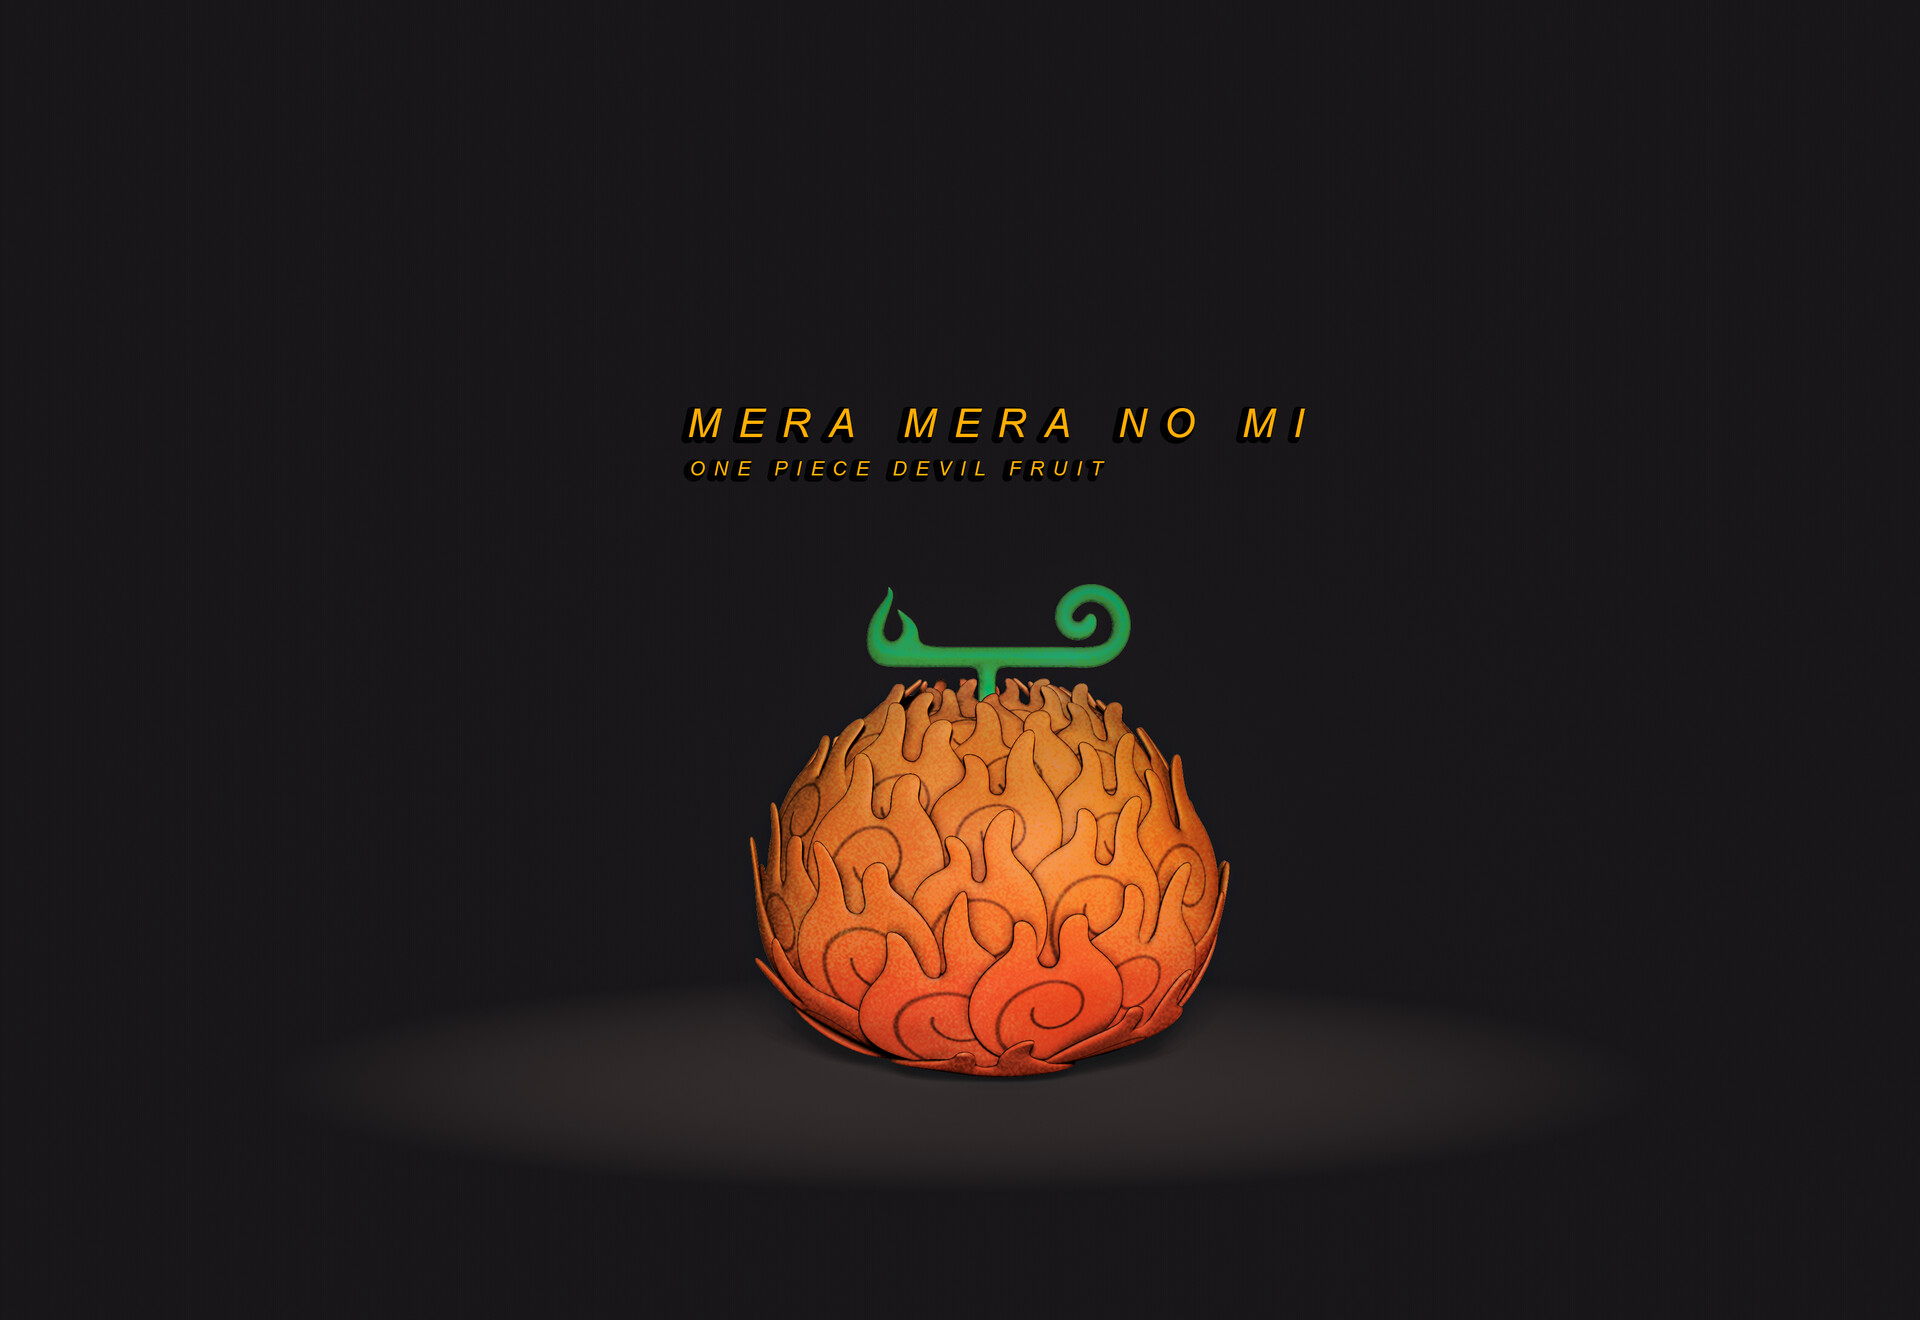 Blender/One-Piece] Mera Mera no Mi by ShadowGamerYTPT on DeviantArt